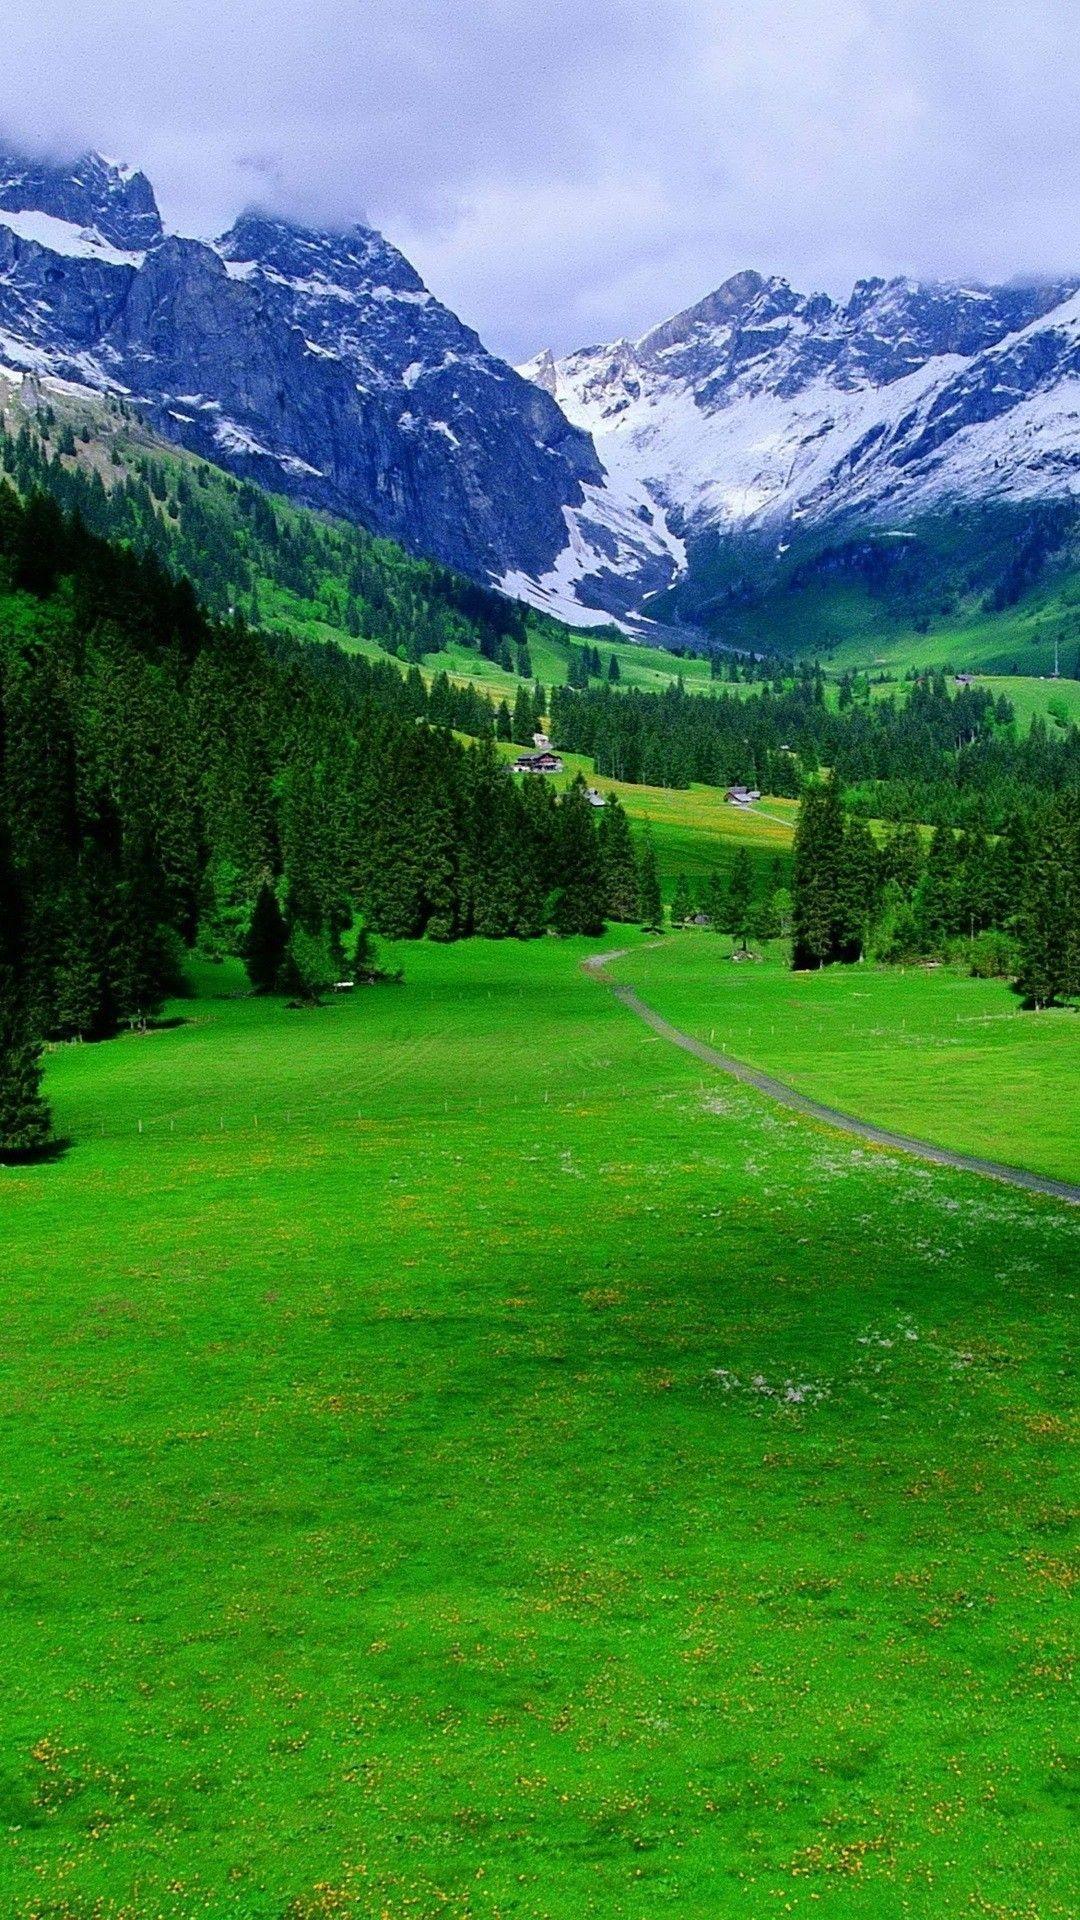 تصویر زمینه طبیعت سرسبز سوئیس برای افراد خاص پسند